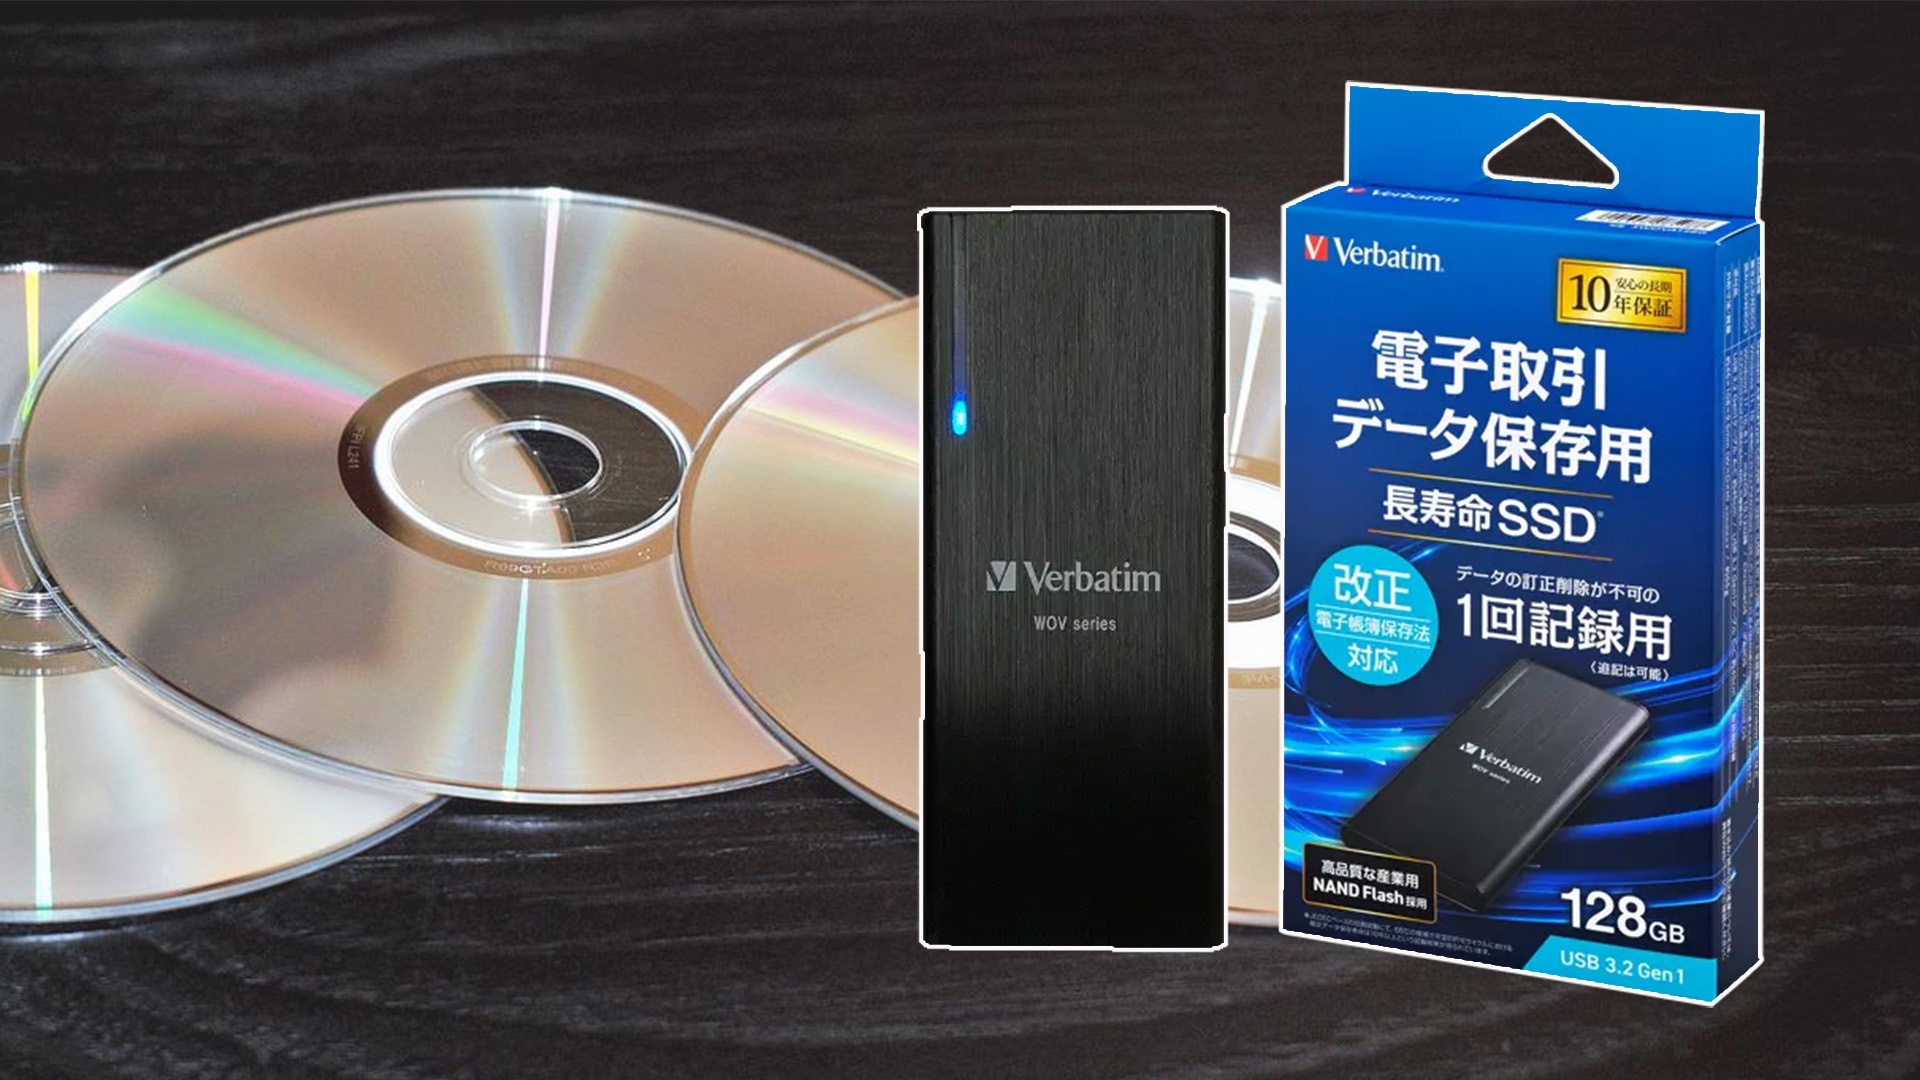 #Neue Speichermethode – Diese SSD übernimmt ganz bewusst den größten Nachteil von CDs und DVDs